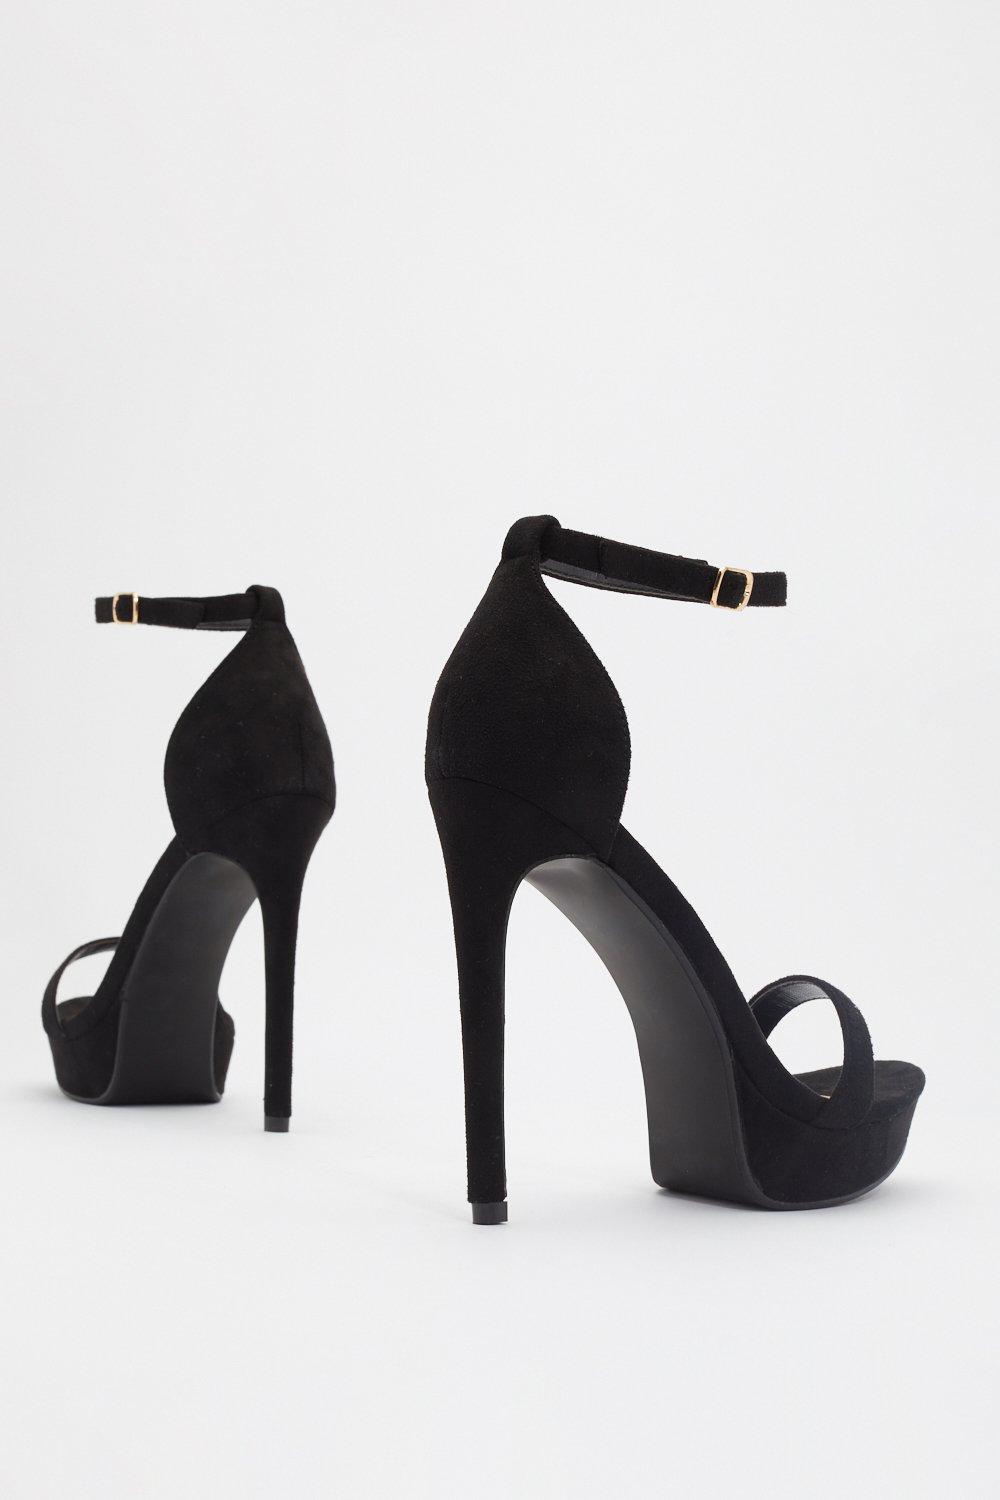 black tall heels